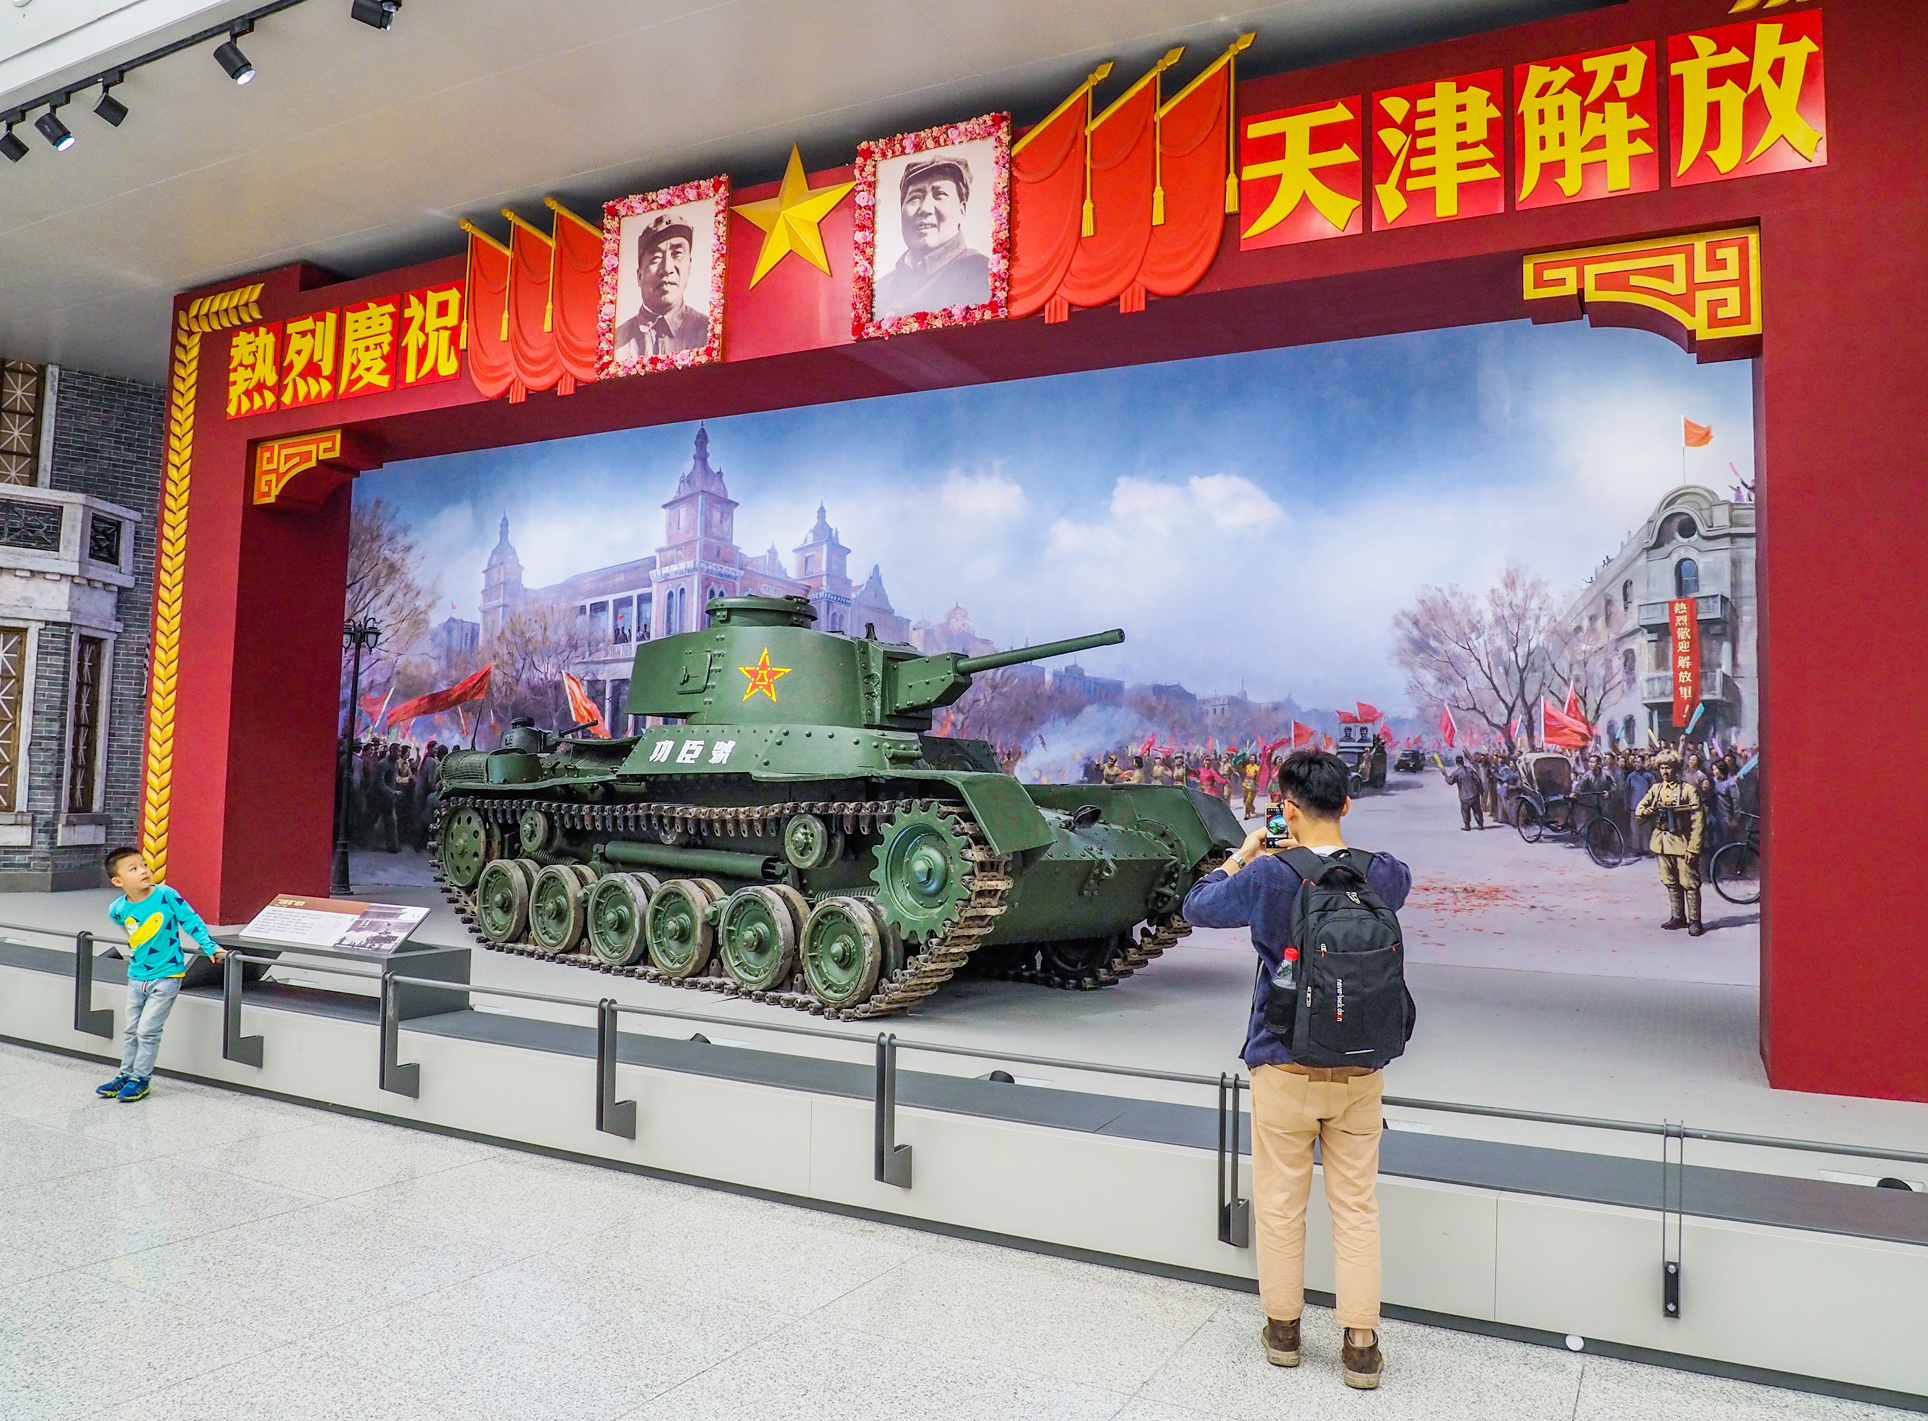 上一组 参观中国人民革命军事博物馆